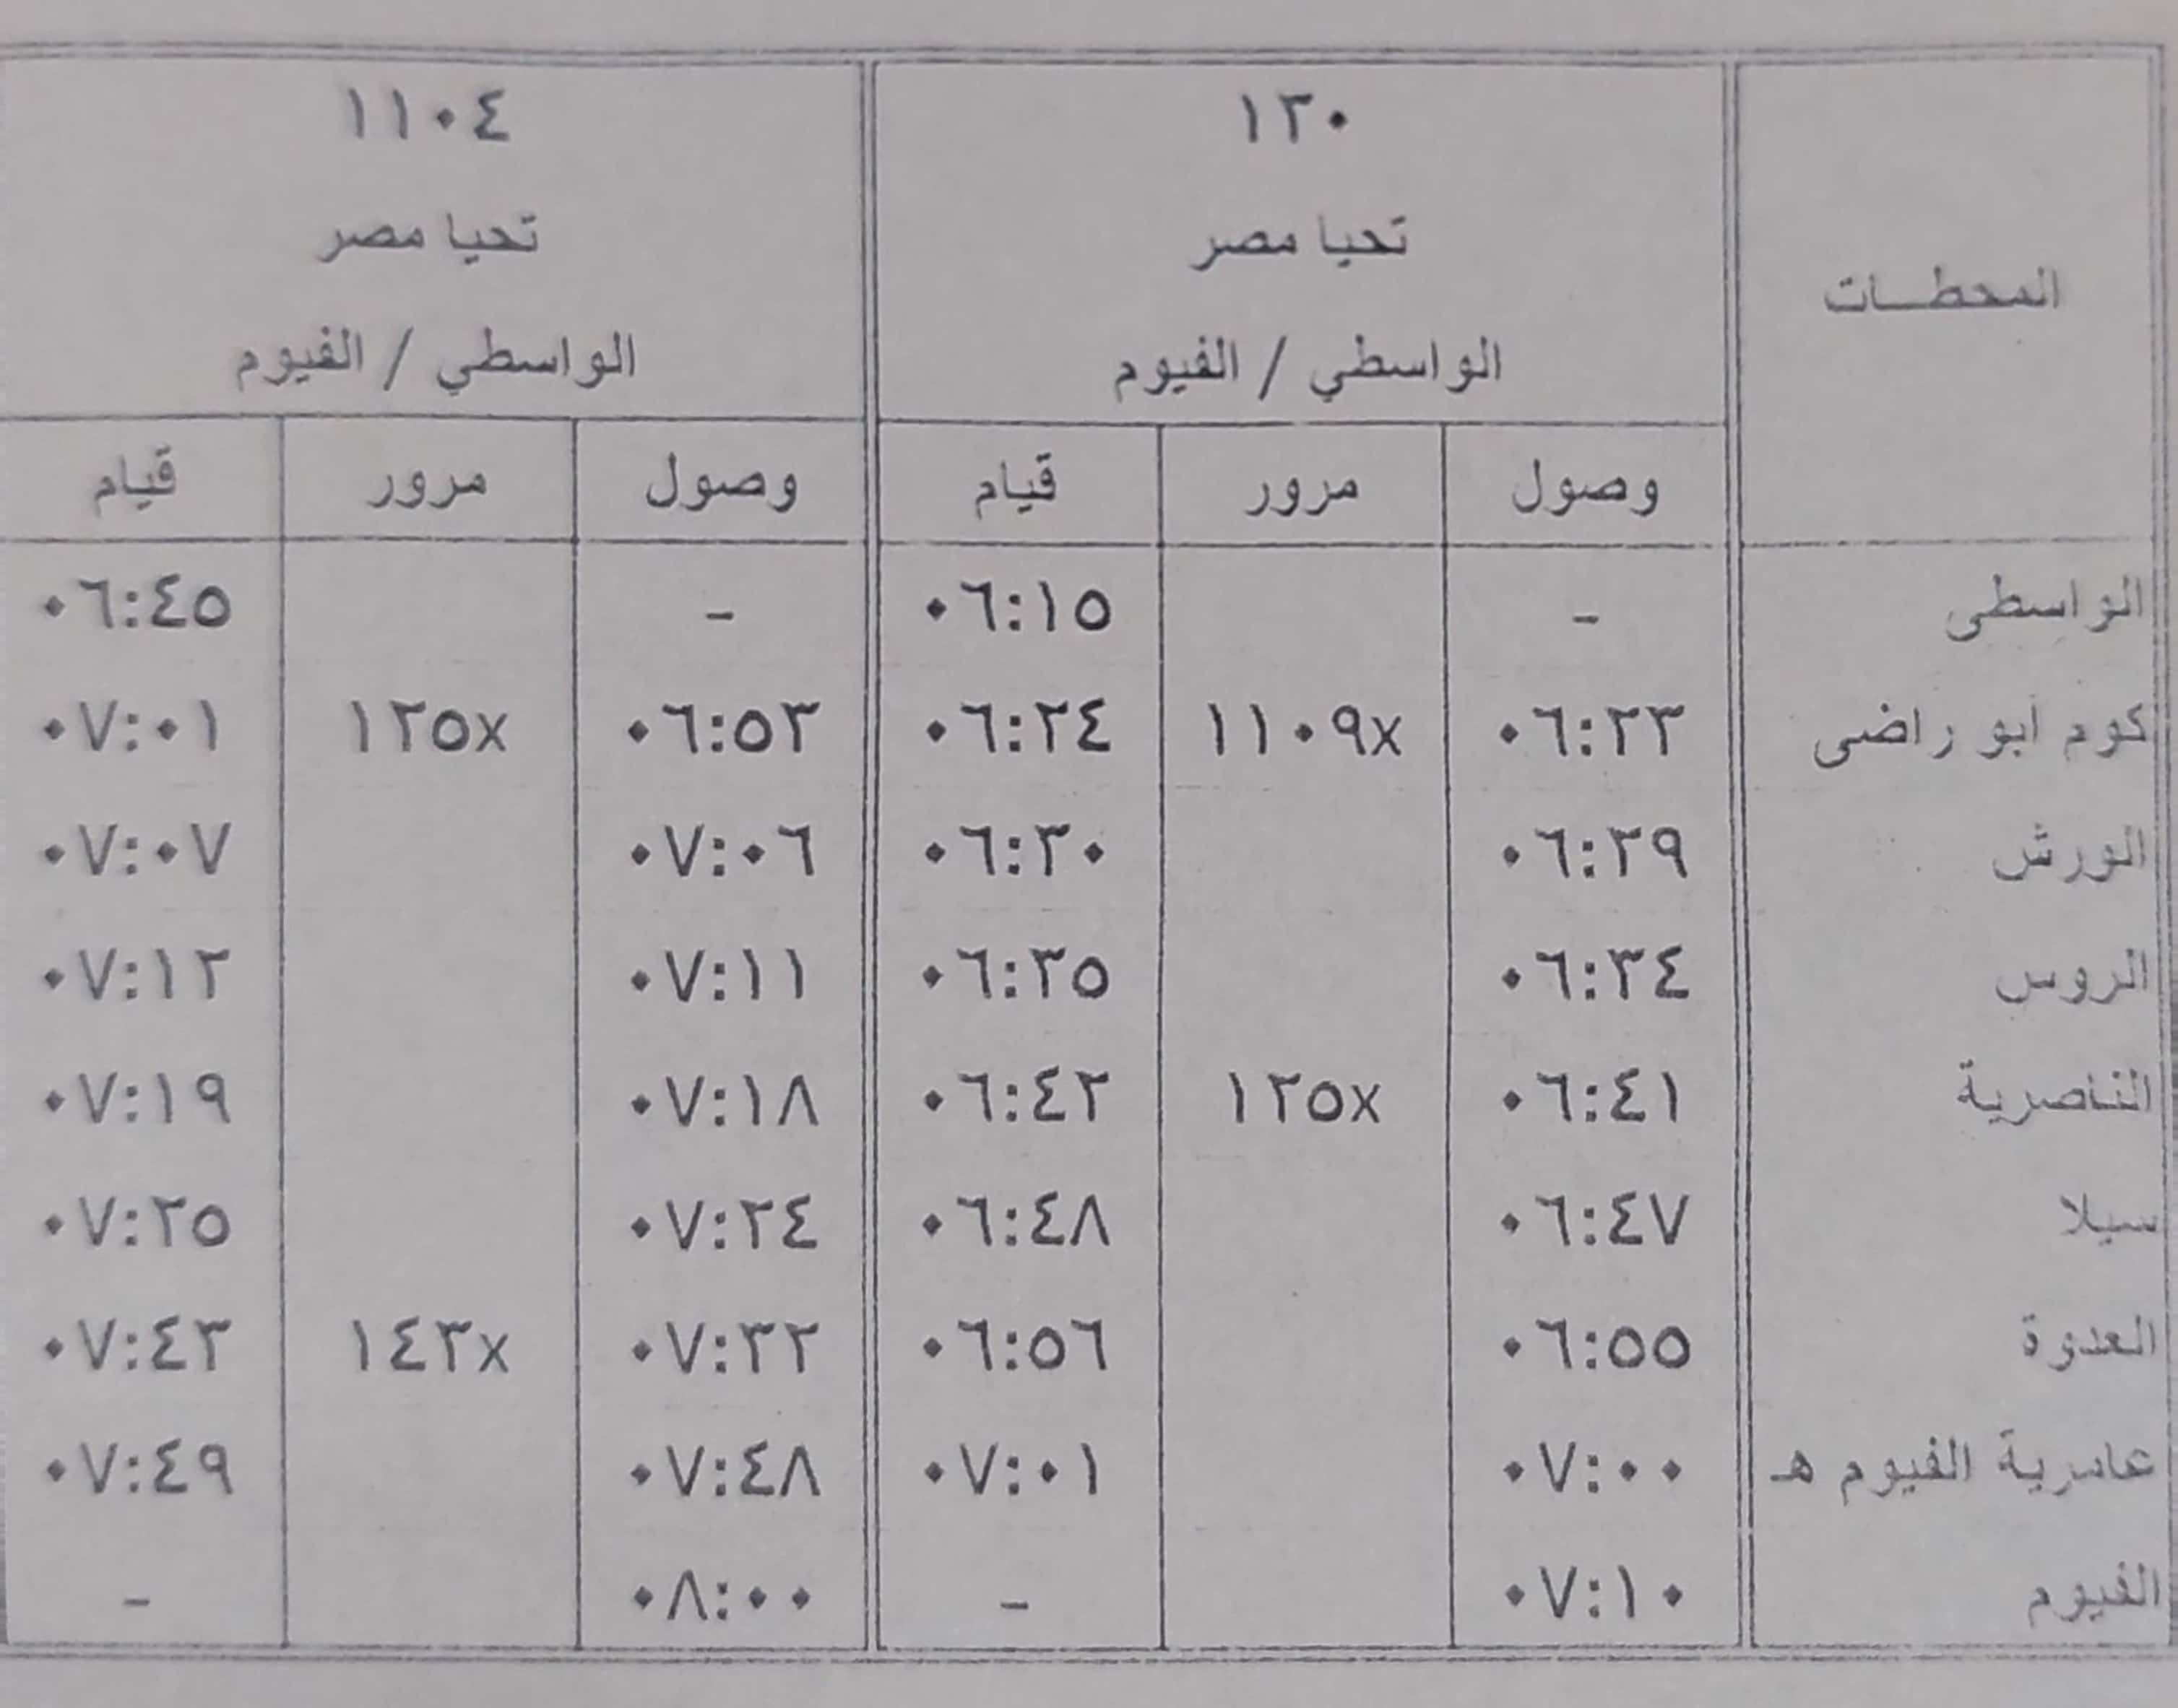 مواعيد بعض القطارات على خط القاهرة  الأقصر و الواسطي  الفيوم (3)